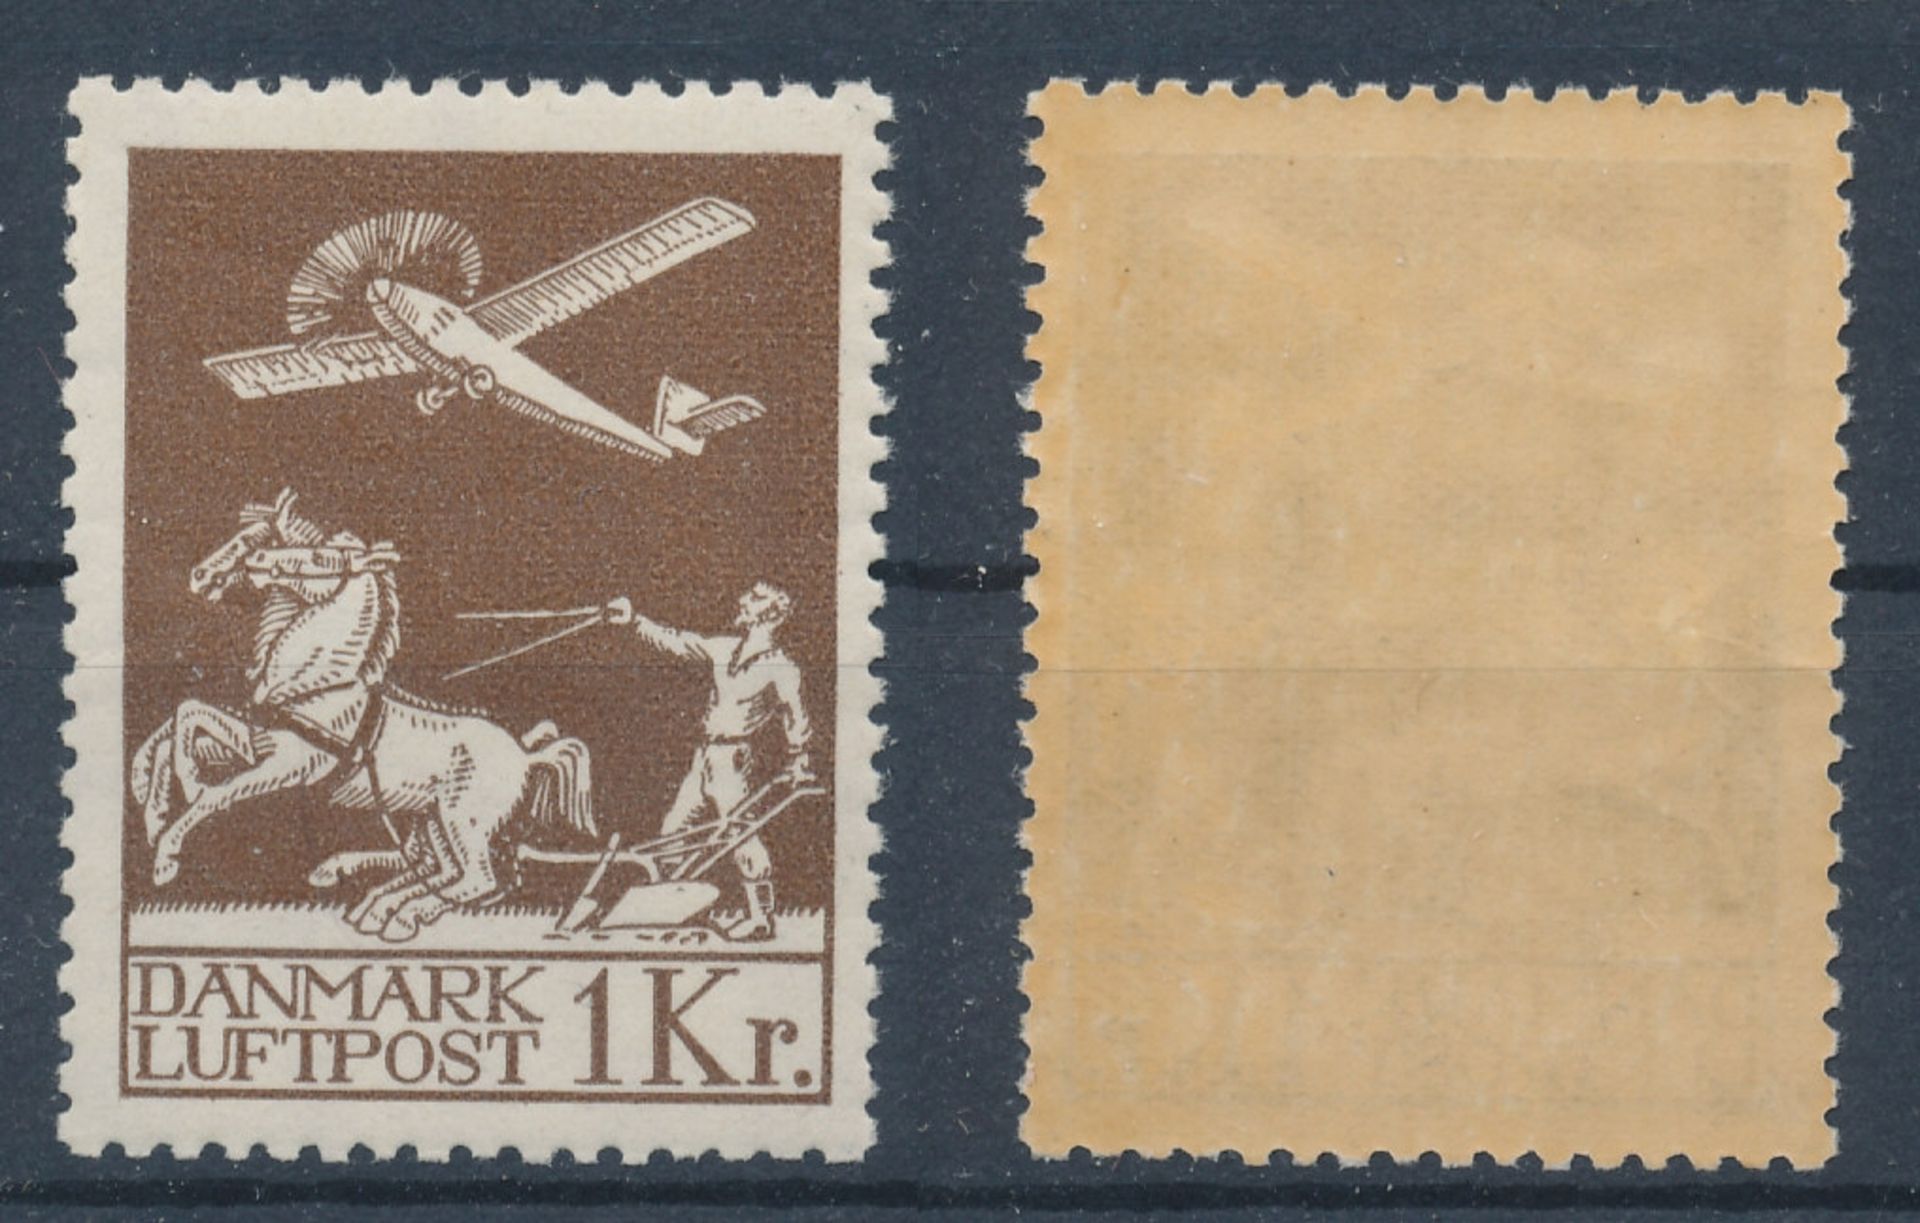 1 Flugpostmarke "Dänemark" in postfrischer Erhaltung, MiNr. 181, seltenes Angebot